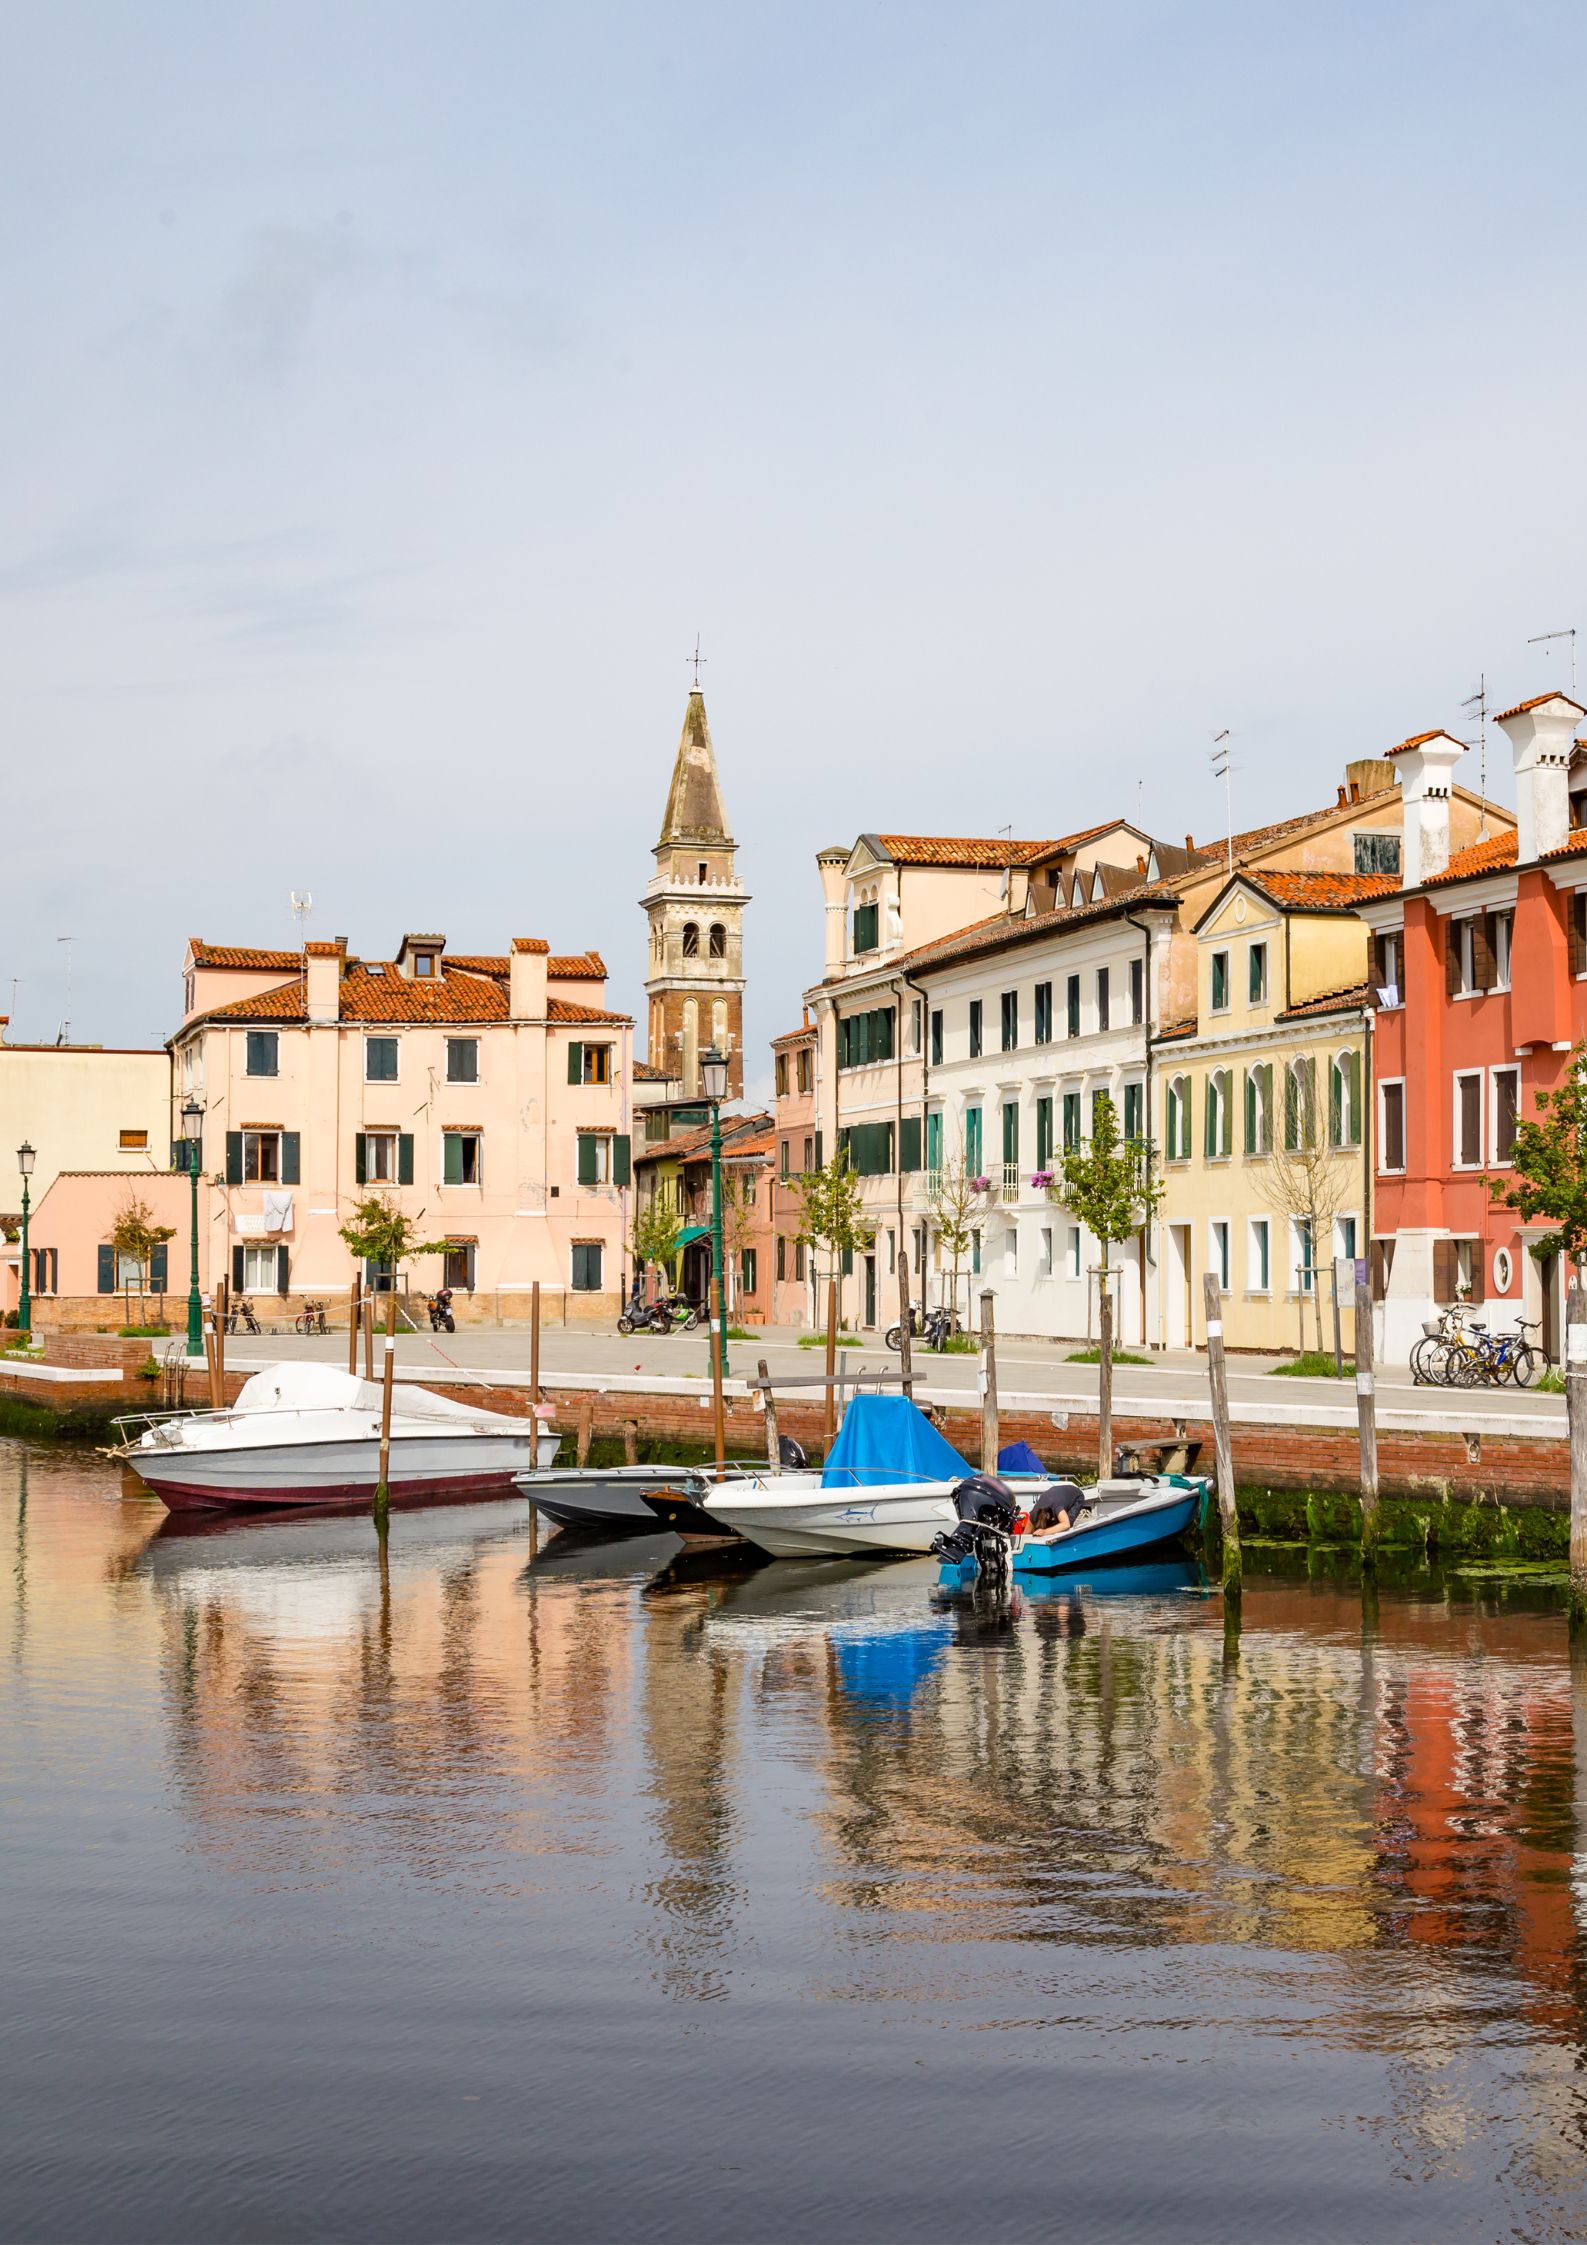 Where to stay at Lido di Venezia